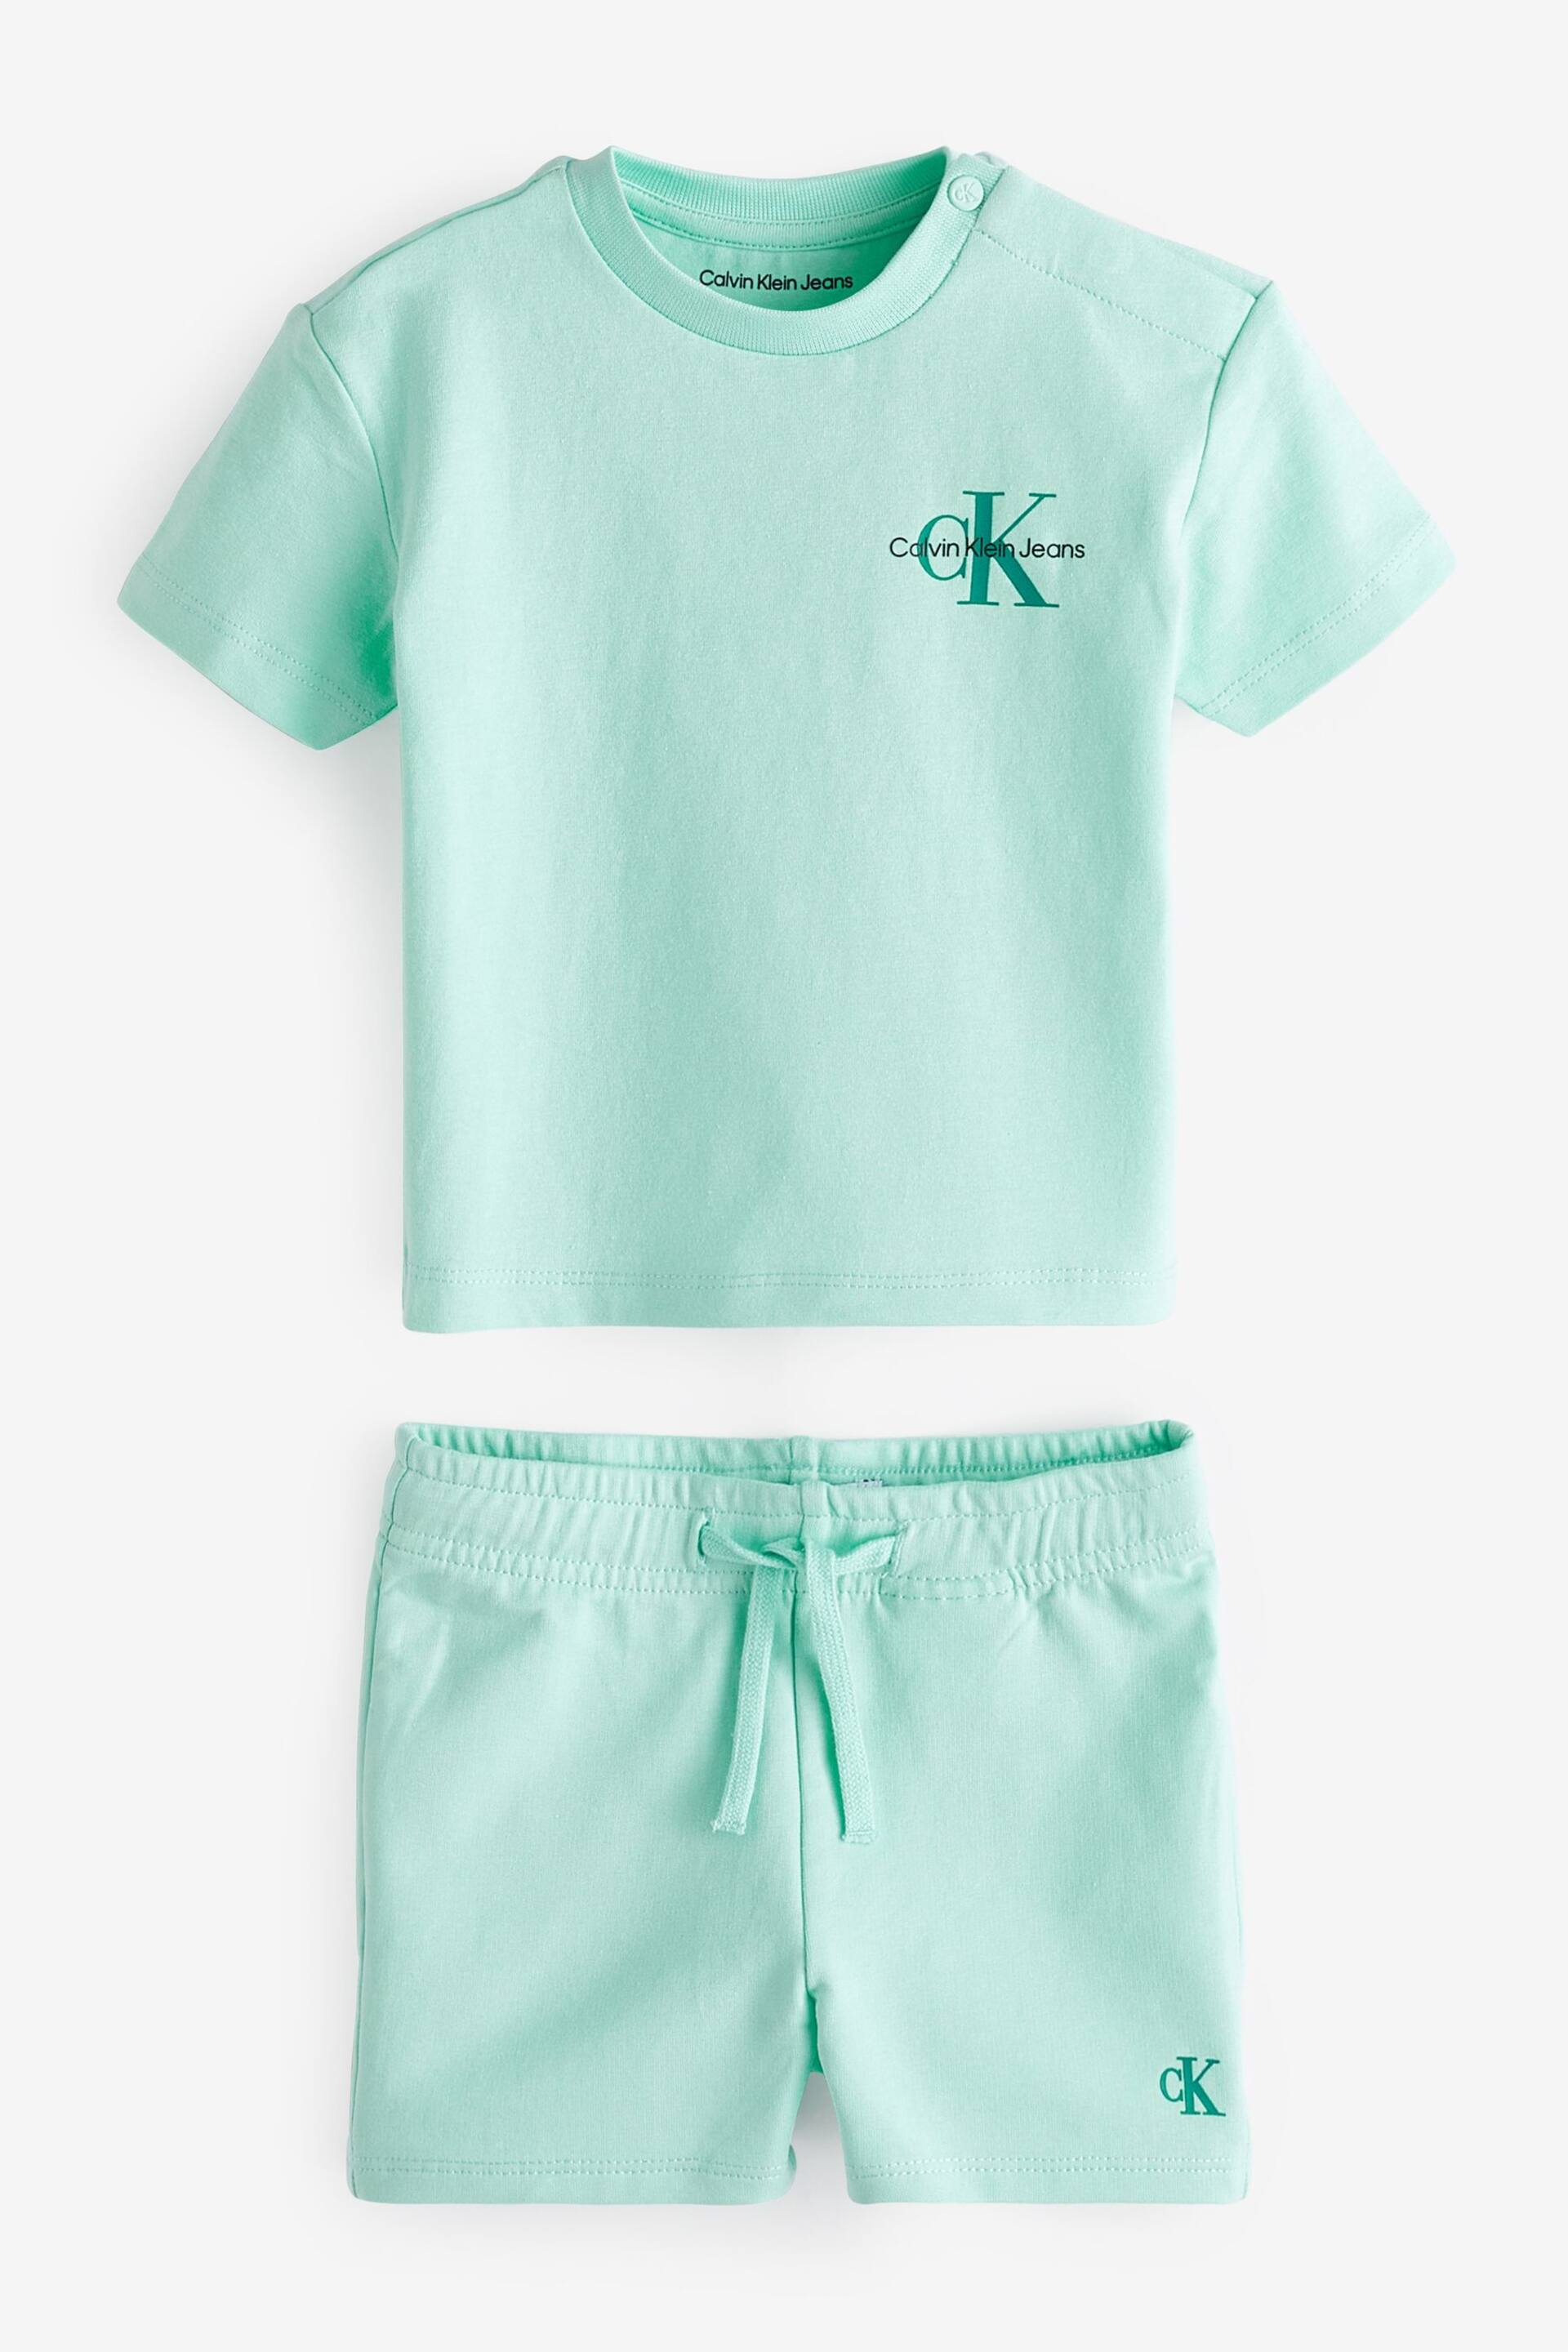 Calvin Klein Blue Monogram Logo T-Shirt Shorts Set - Image 1 of 2